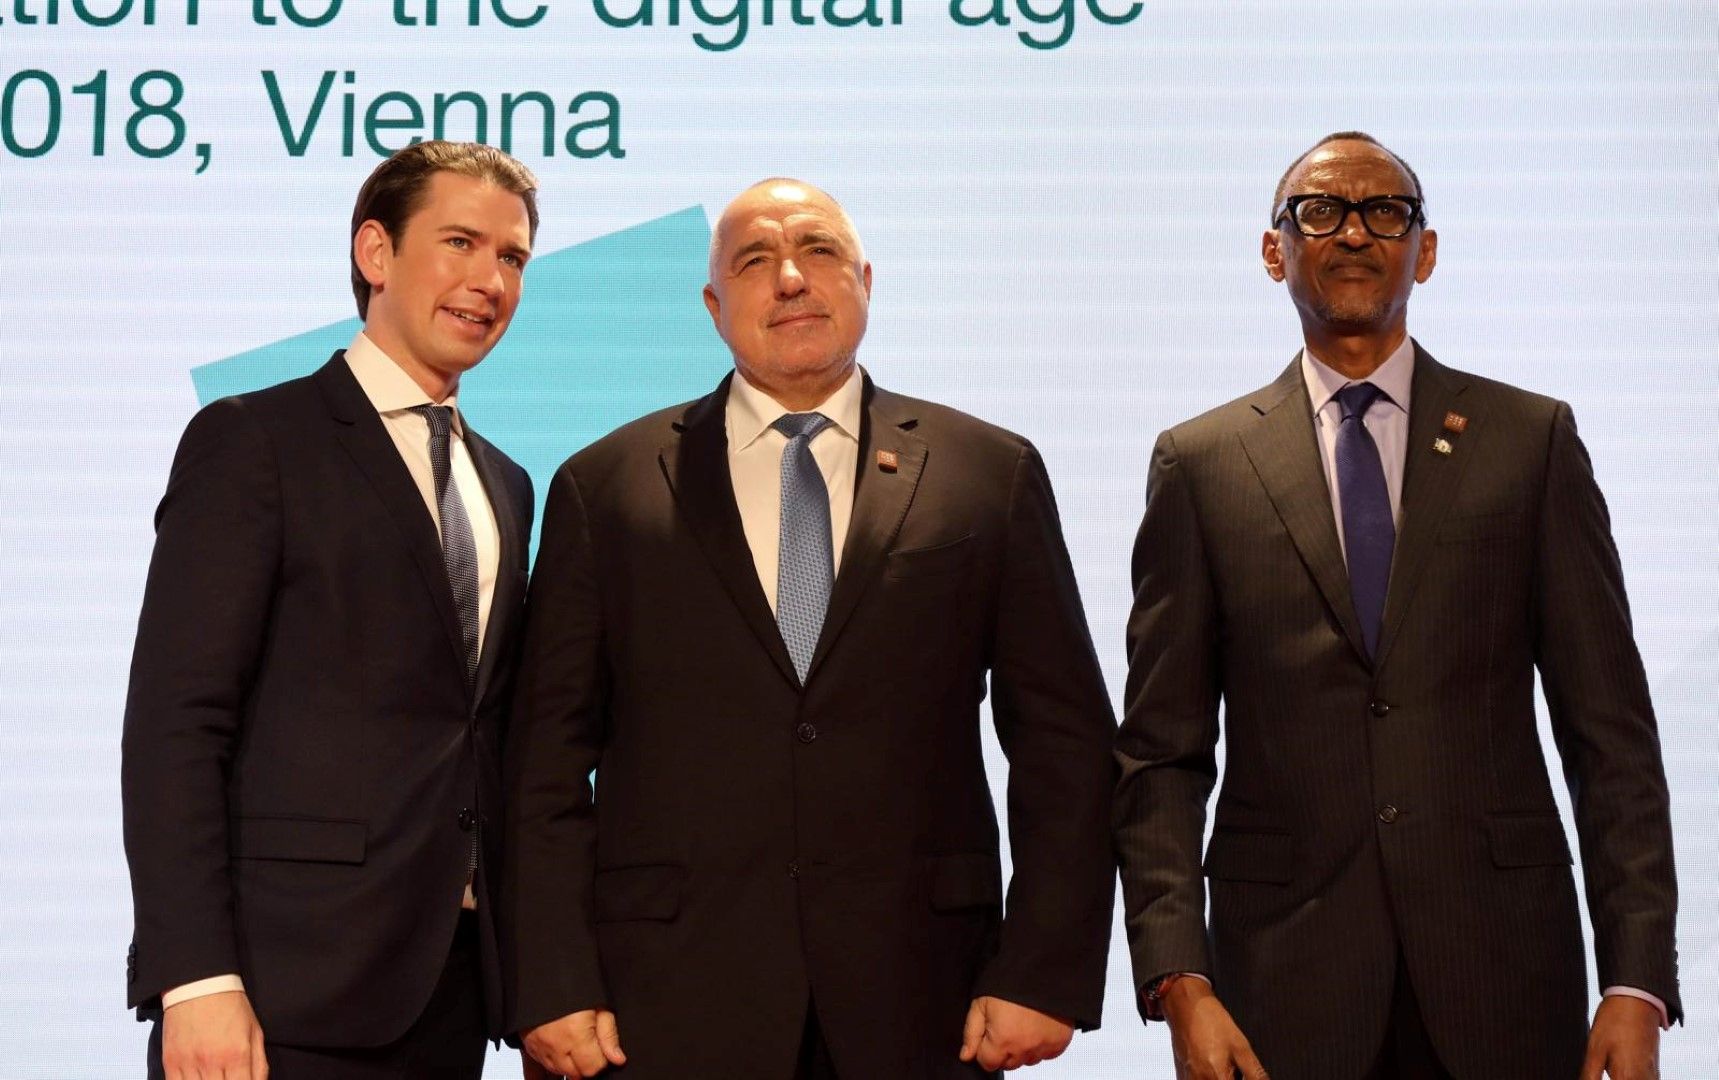 Във Виена Бойко Борисов участва във форум с канцлера на Австрия Себастиян Курц и президента на Руанда Пол Кагаме